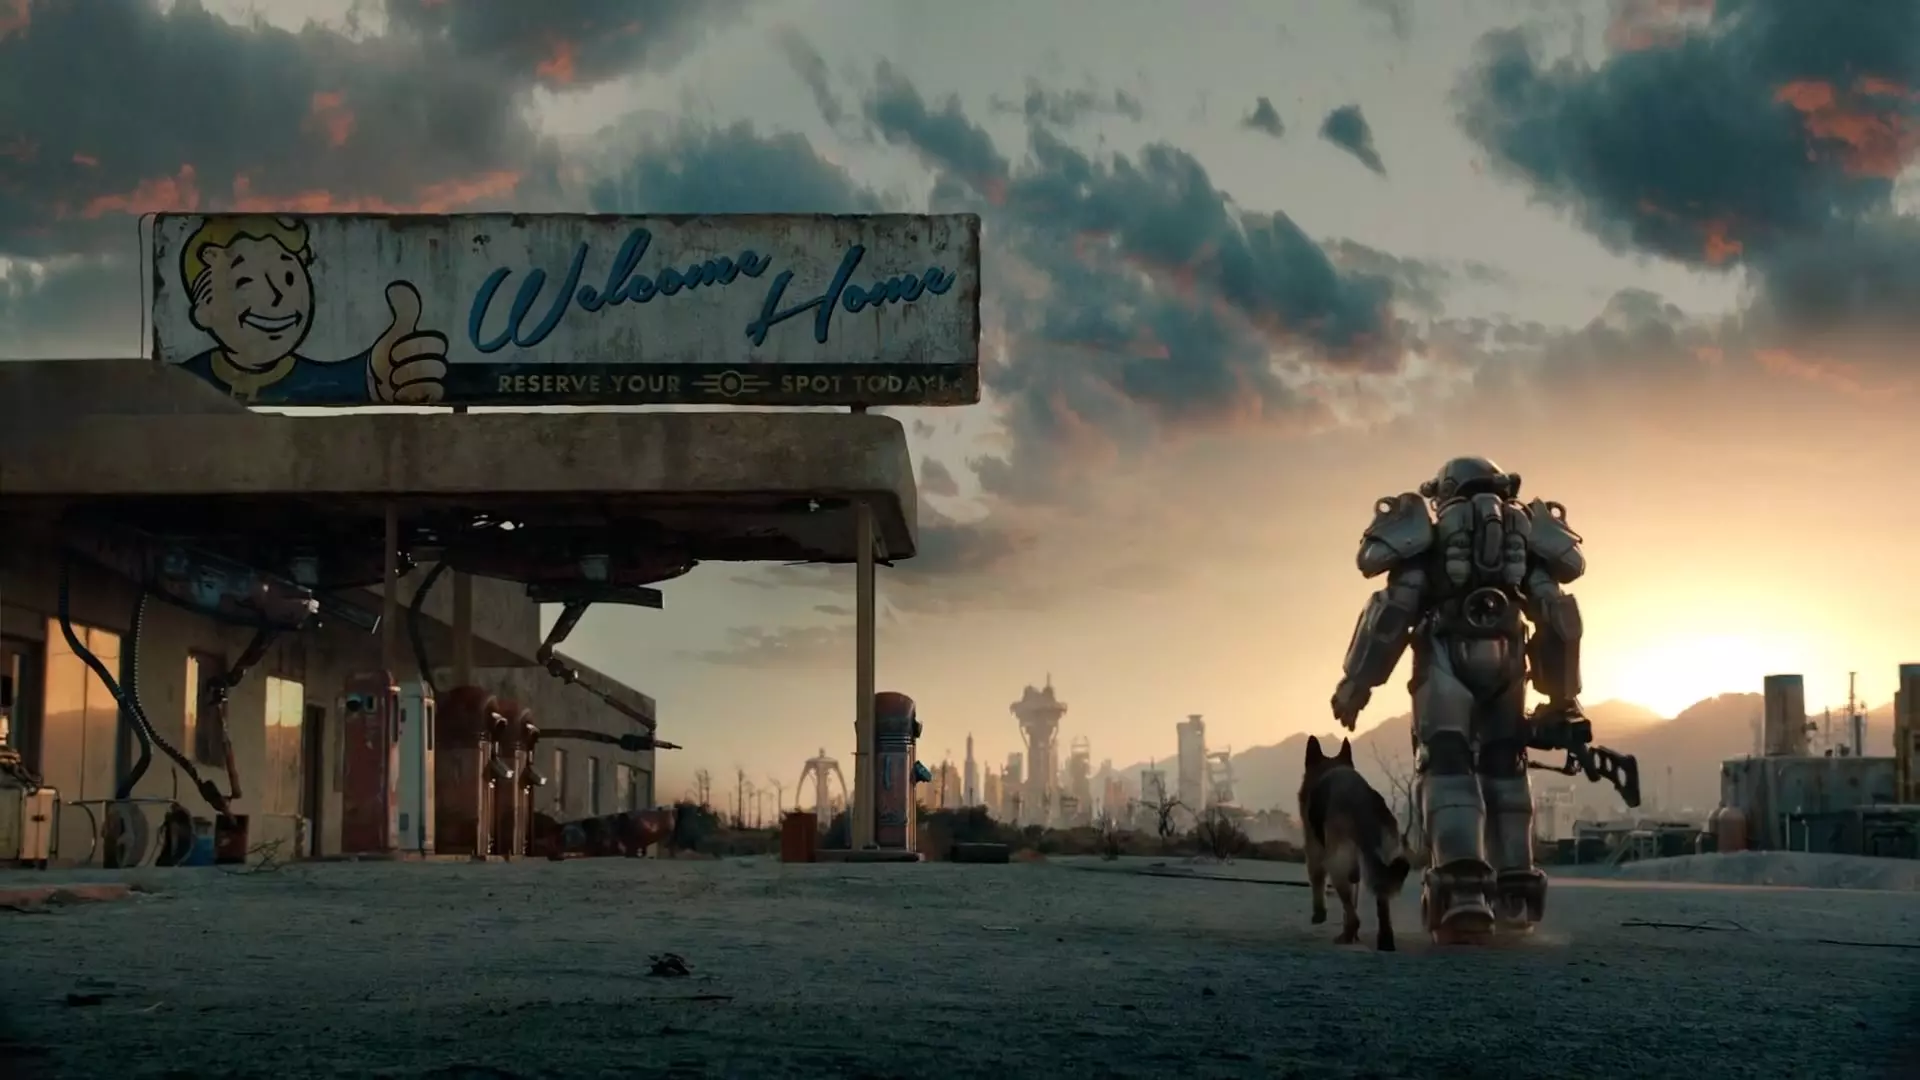 سریال Fallout میانگین نمرات 70 را کسب کرد